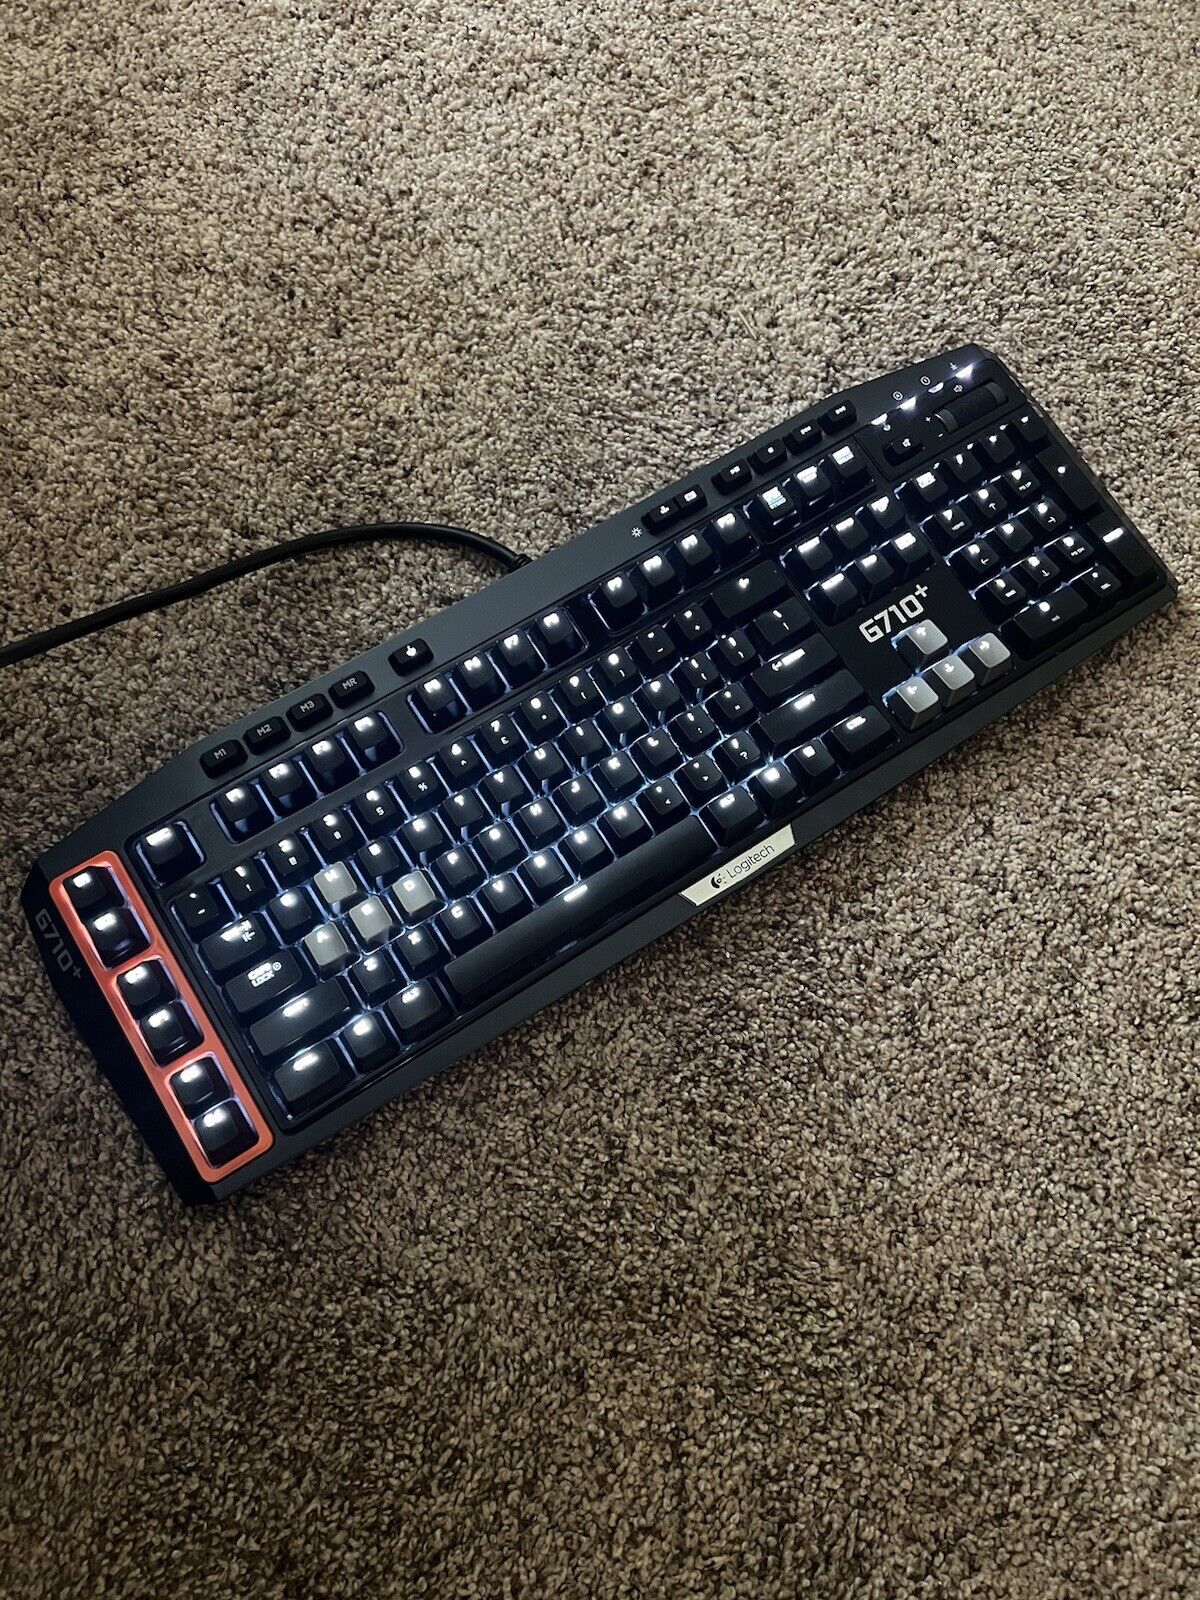 Logitech G710+ Mechanical Gaming Keyboard Y-U0018 